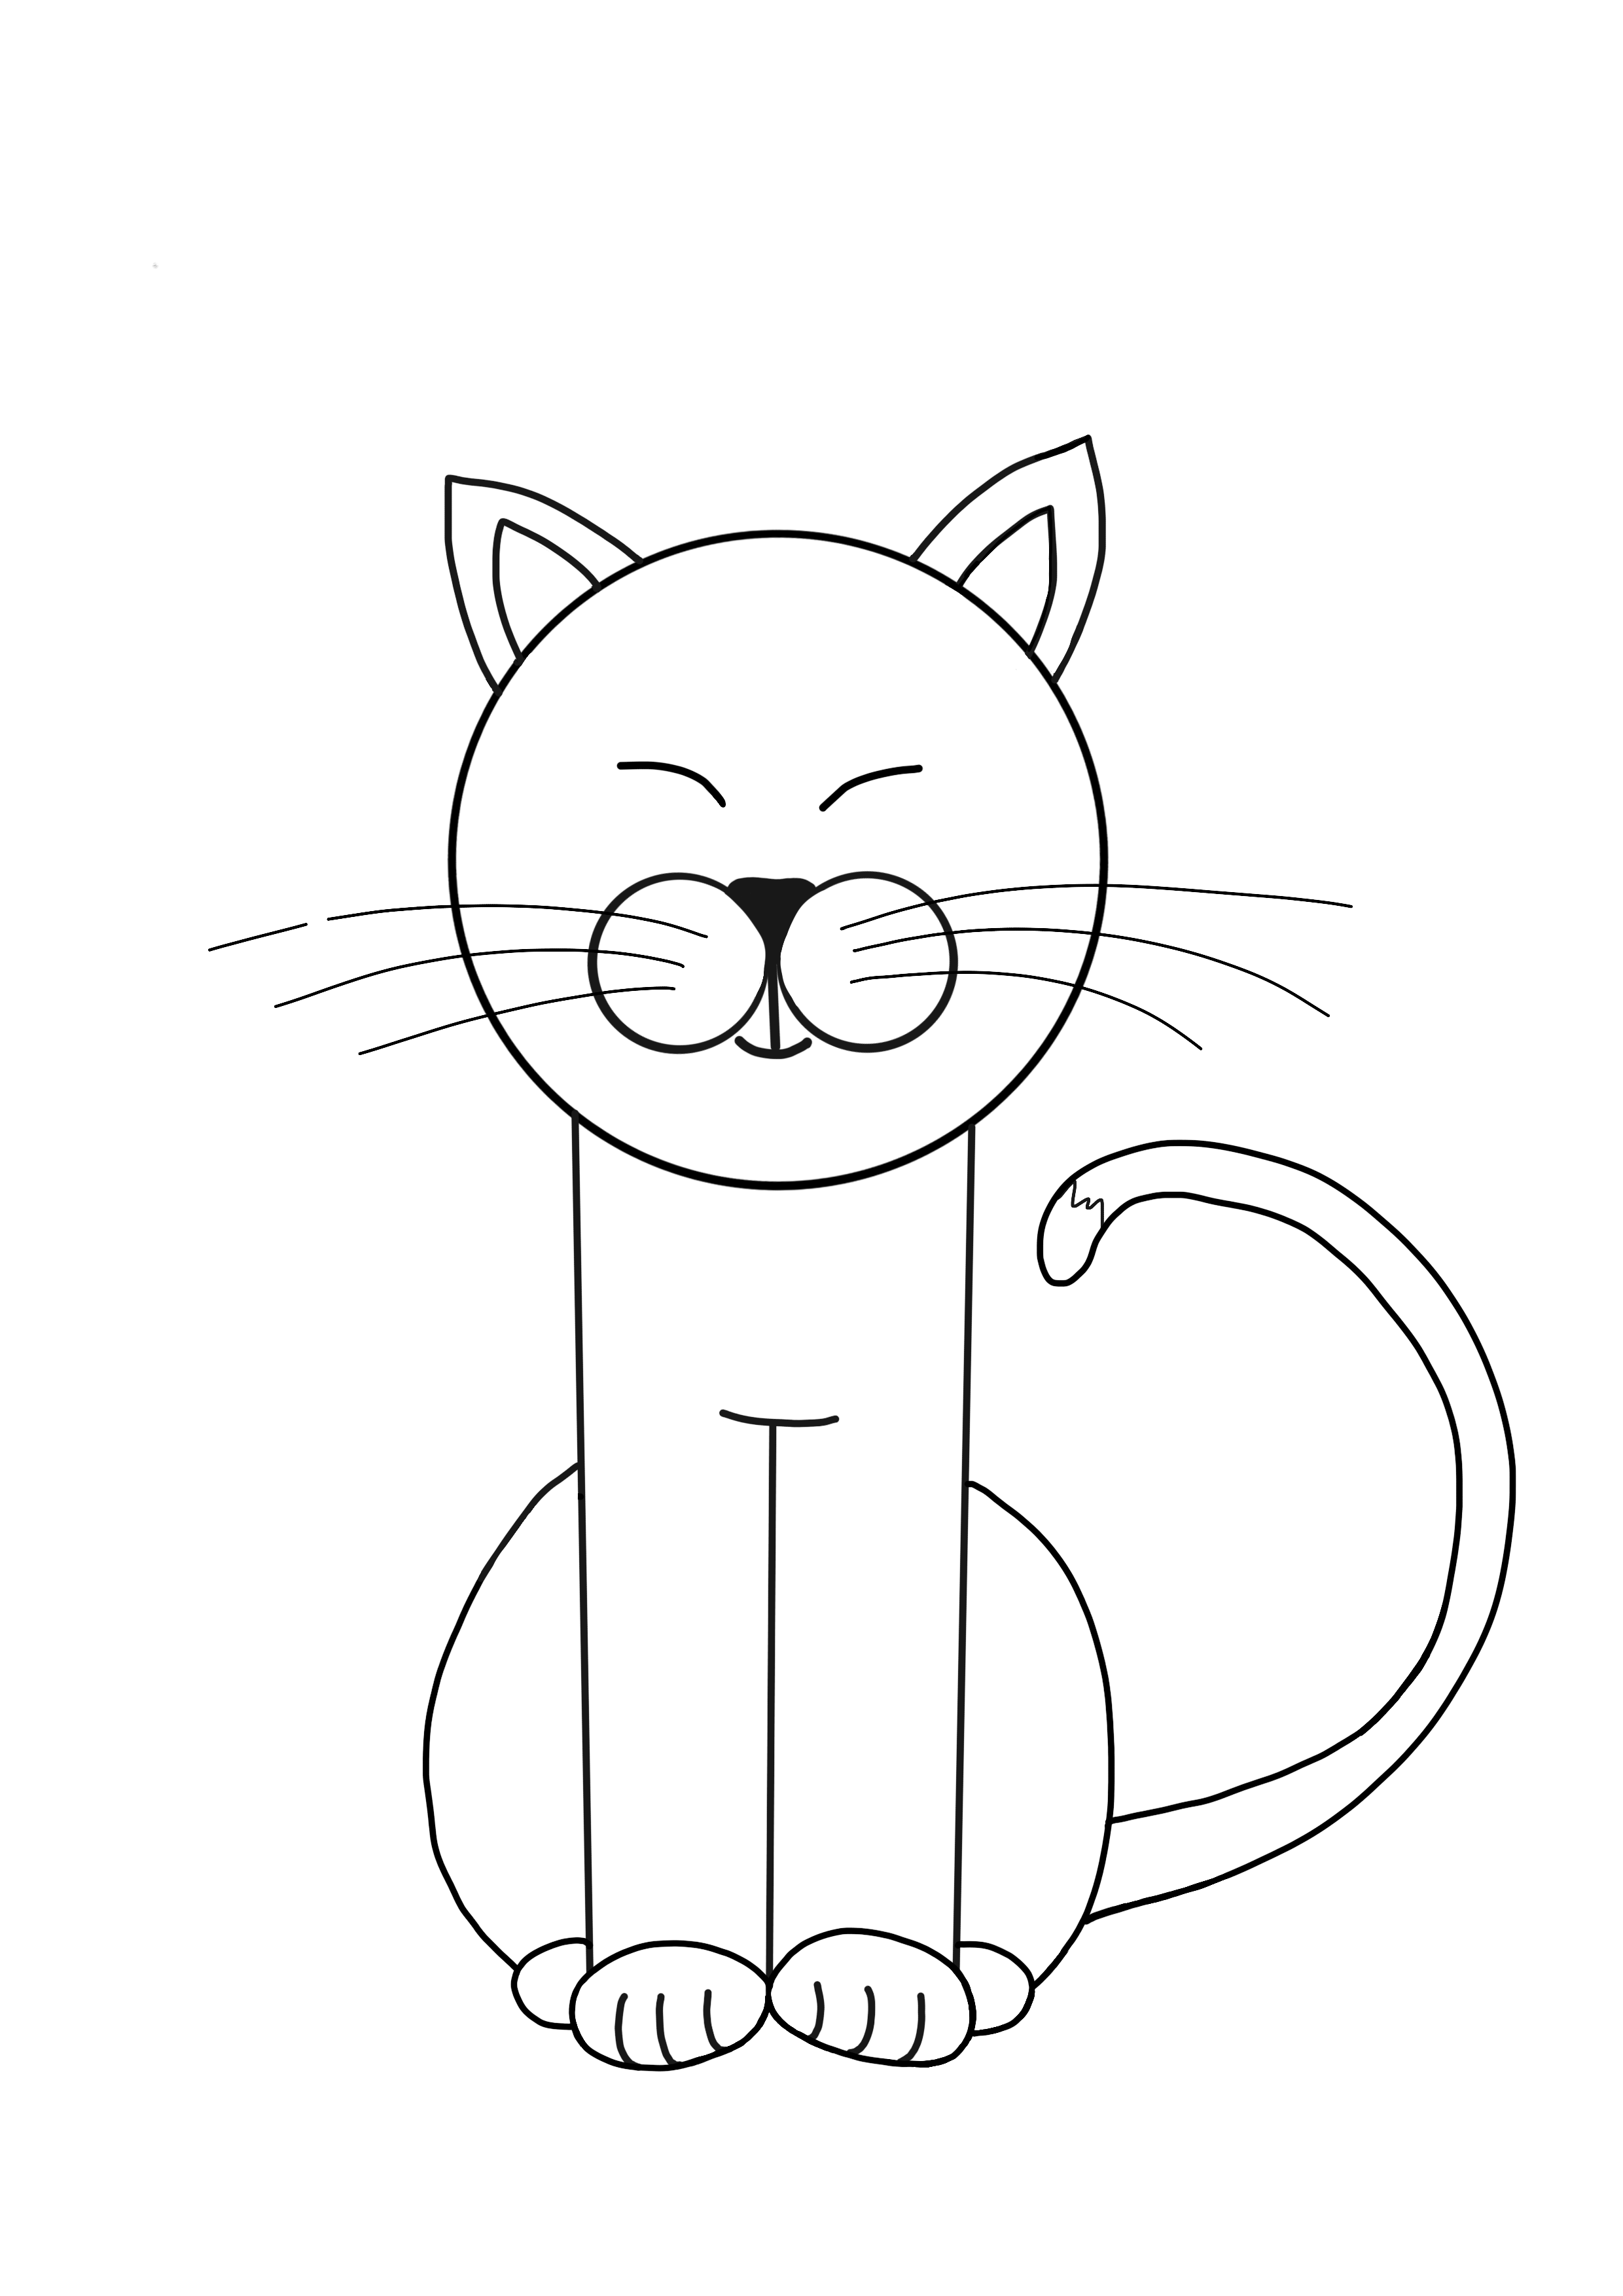 Картинки которые можно срисовать легко. Рисунки котиков для срисовки. Рисунок кошки легкий для детей. Рисунки для срисовки лёгкие коты. Картинки для рисования легкие.